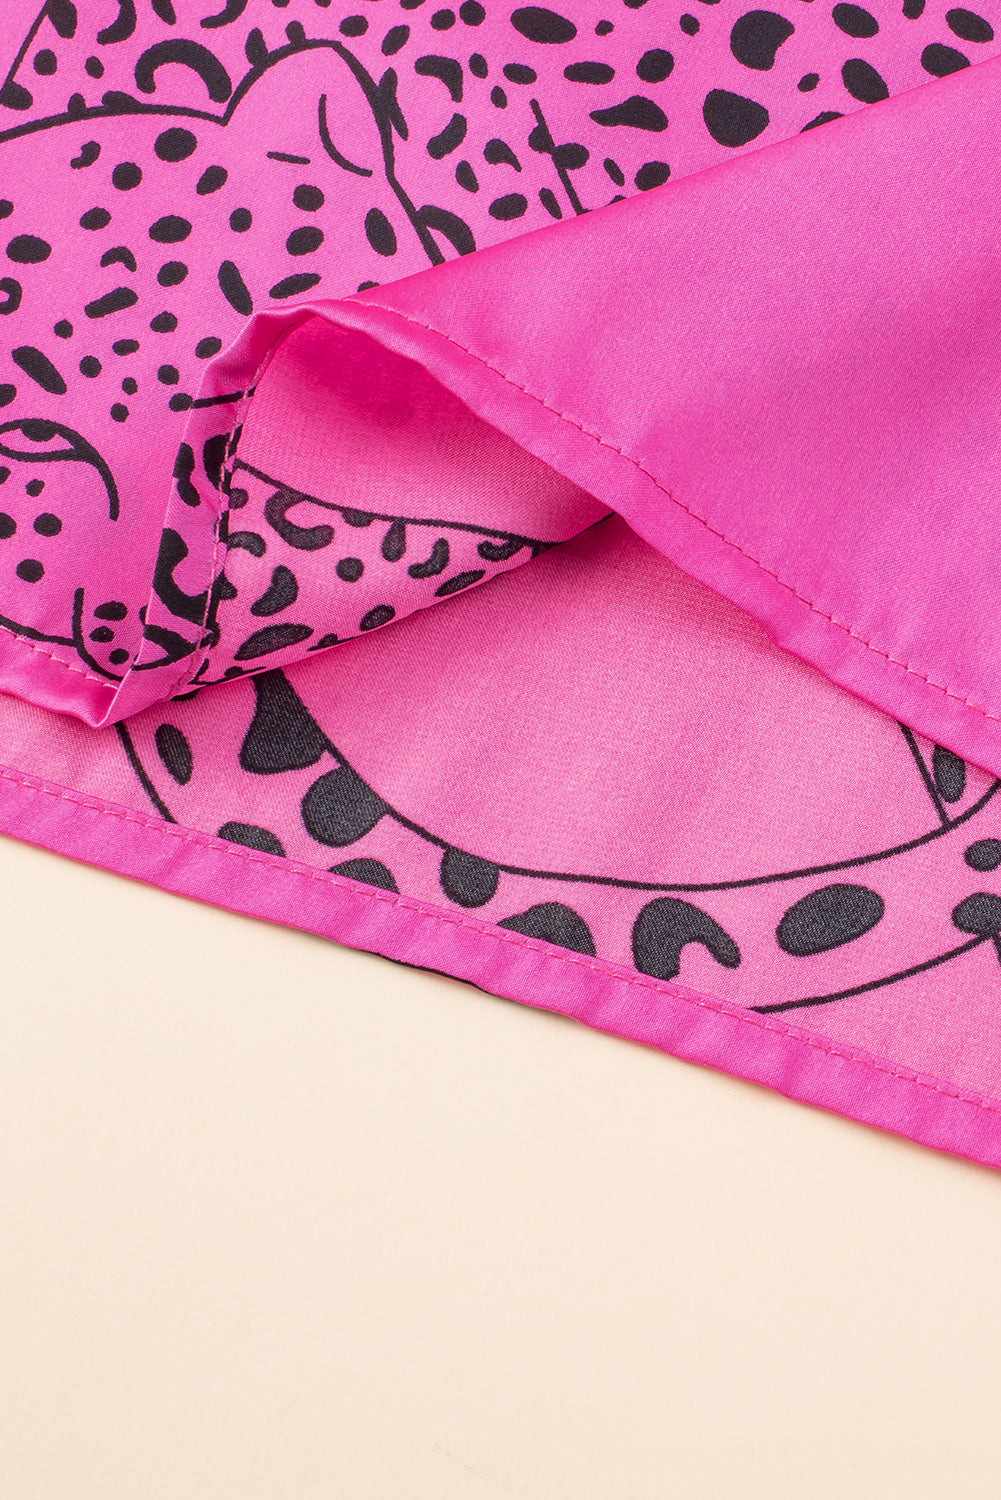 Geknöpftes Minikleid mit rosa Gepardenmuster und halblangen Ärmeln in Übergröße